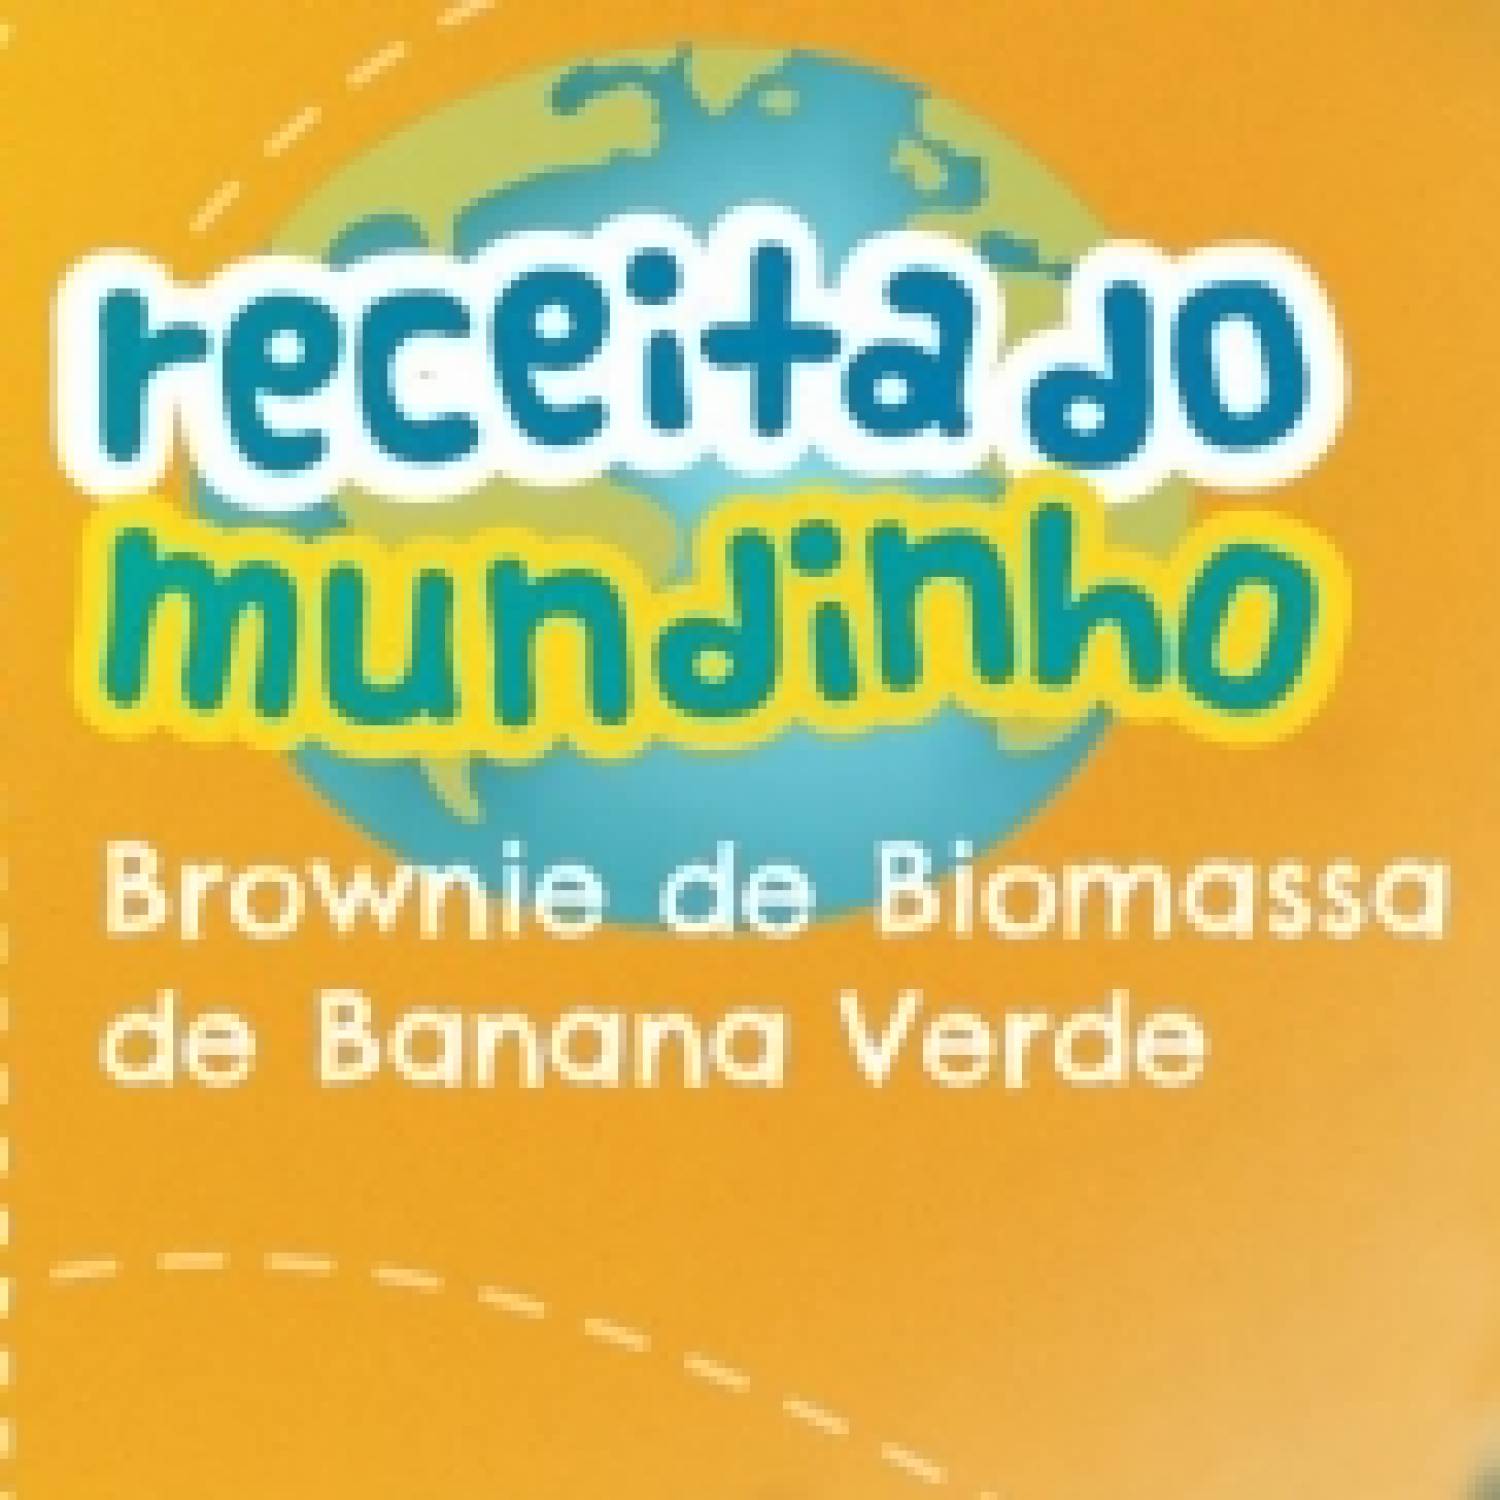 Brownie de biomassa de banana verde